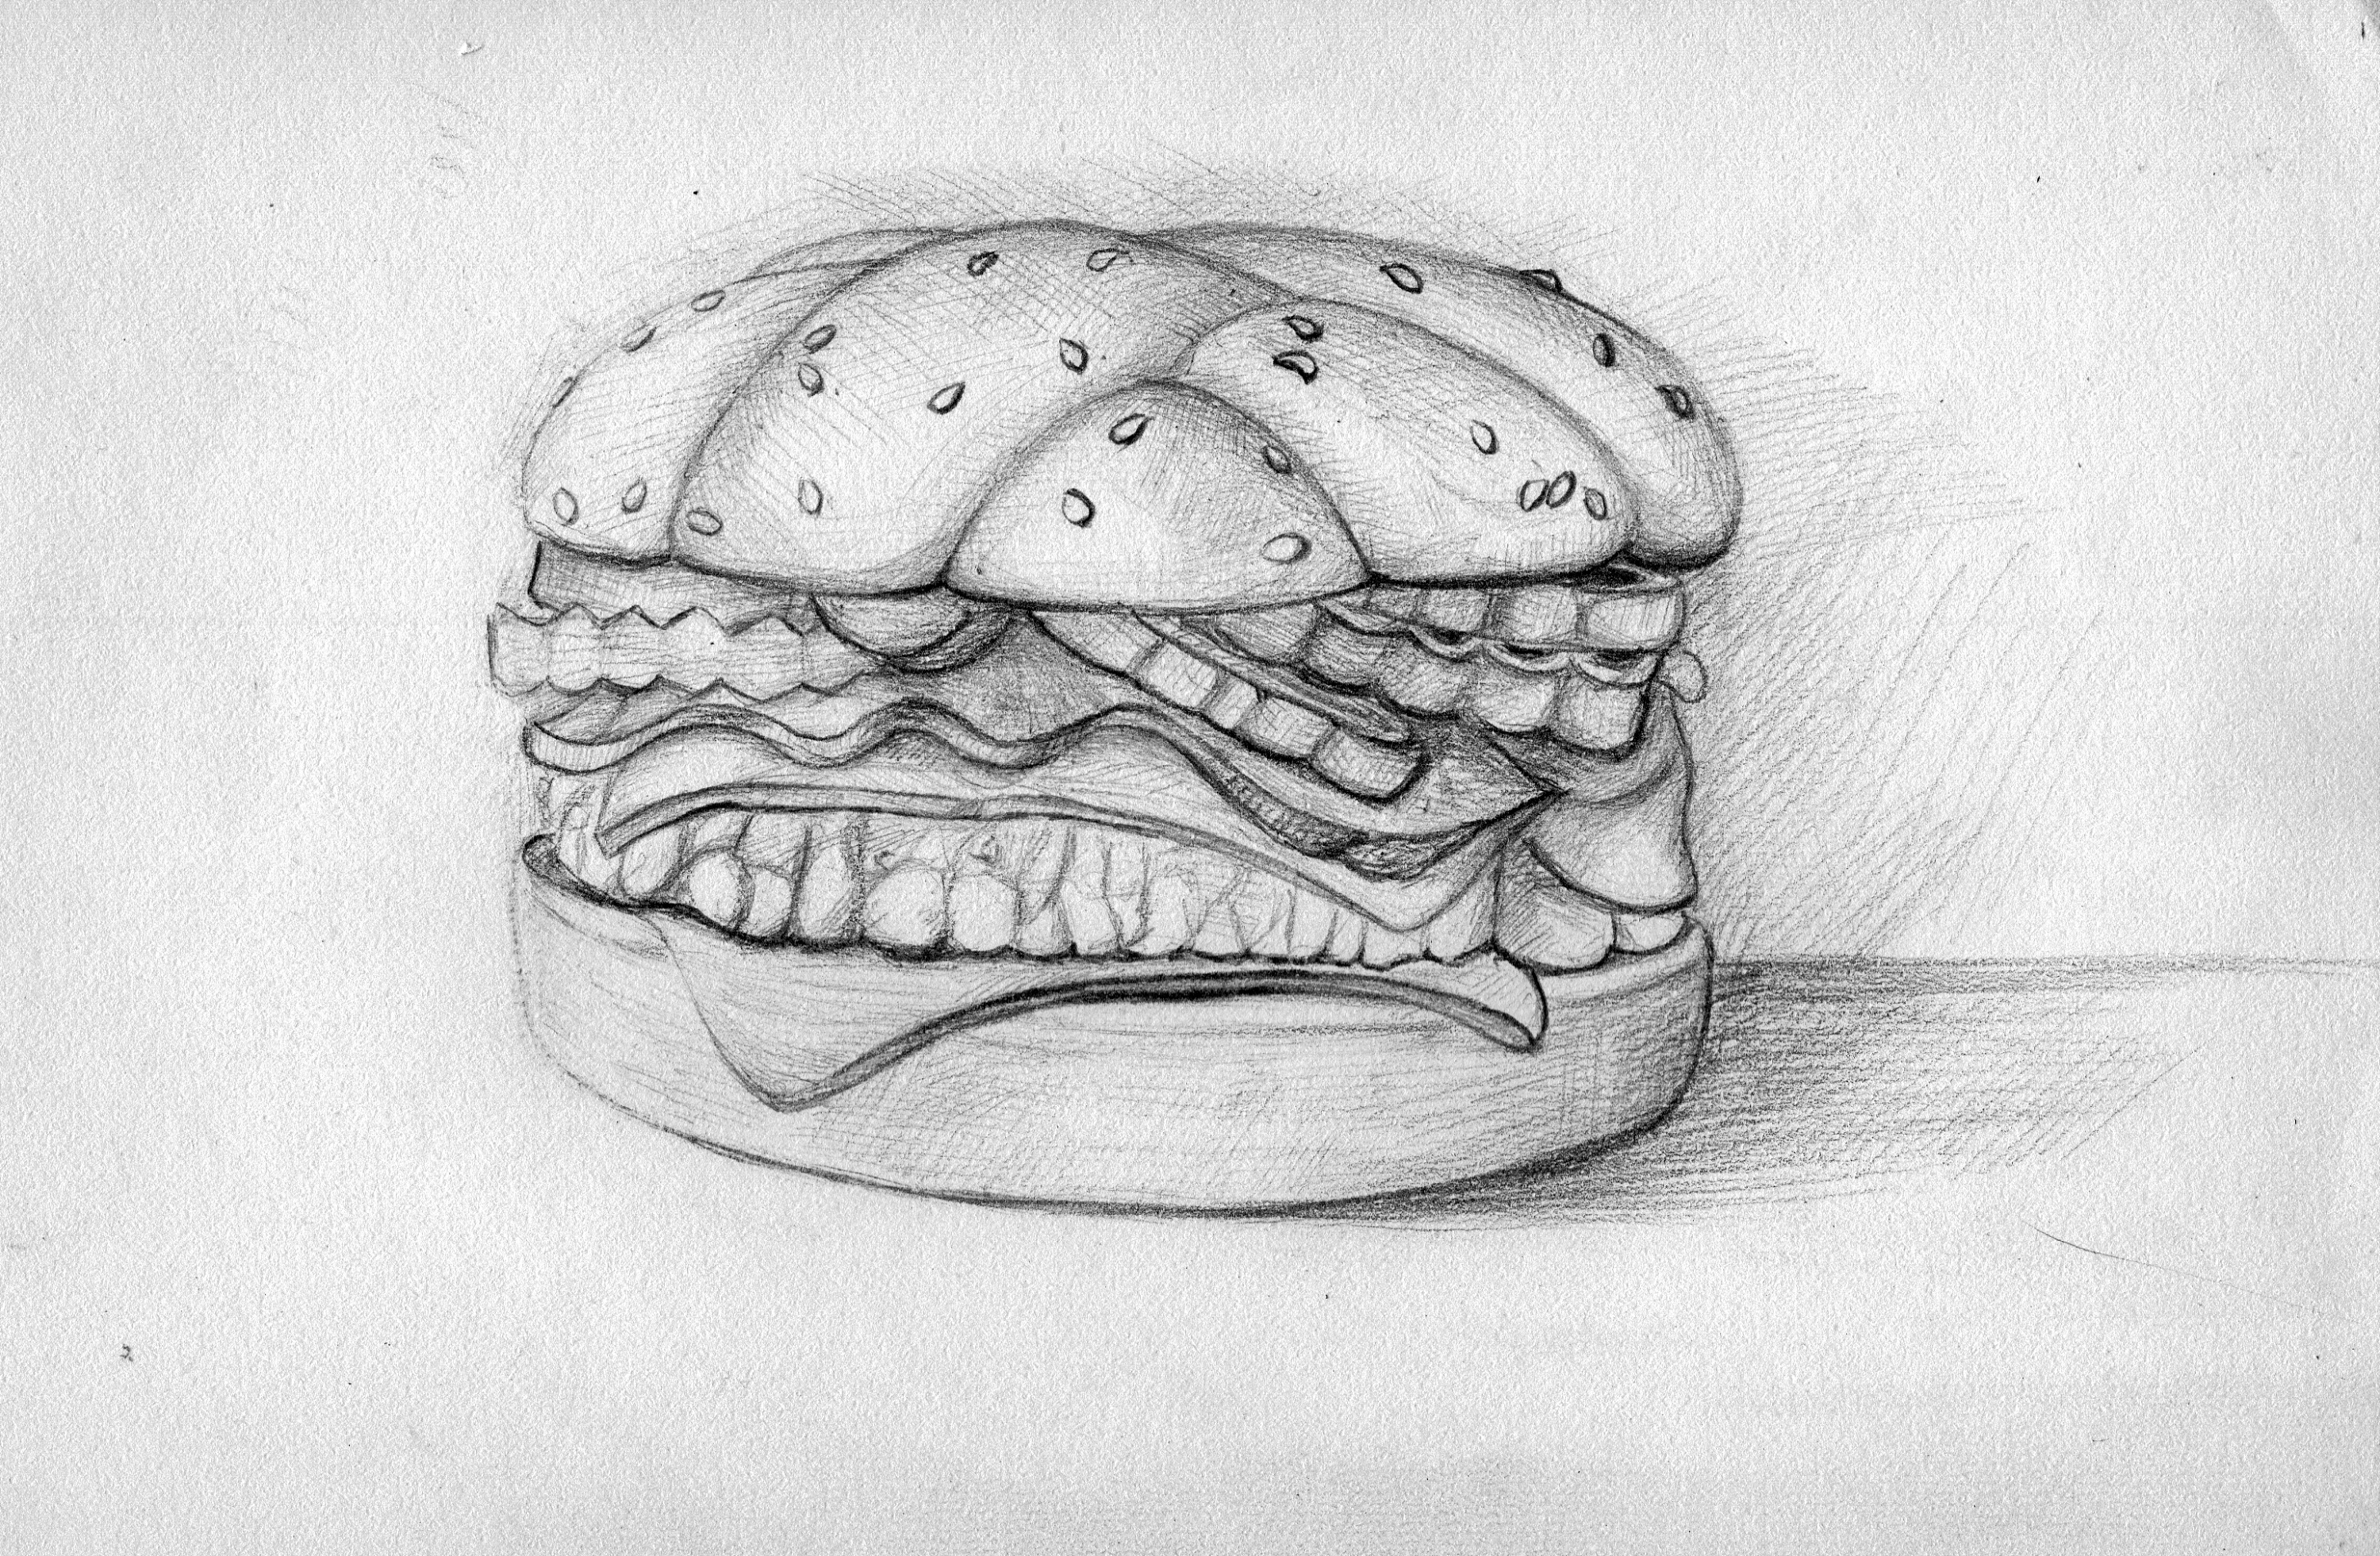 汉堡包简笔画素描图片